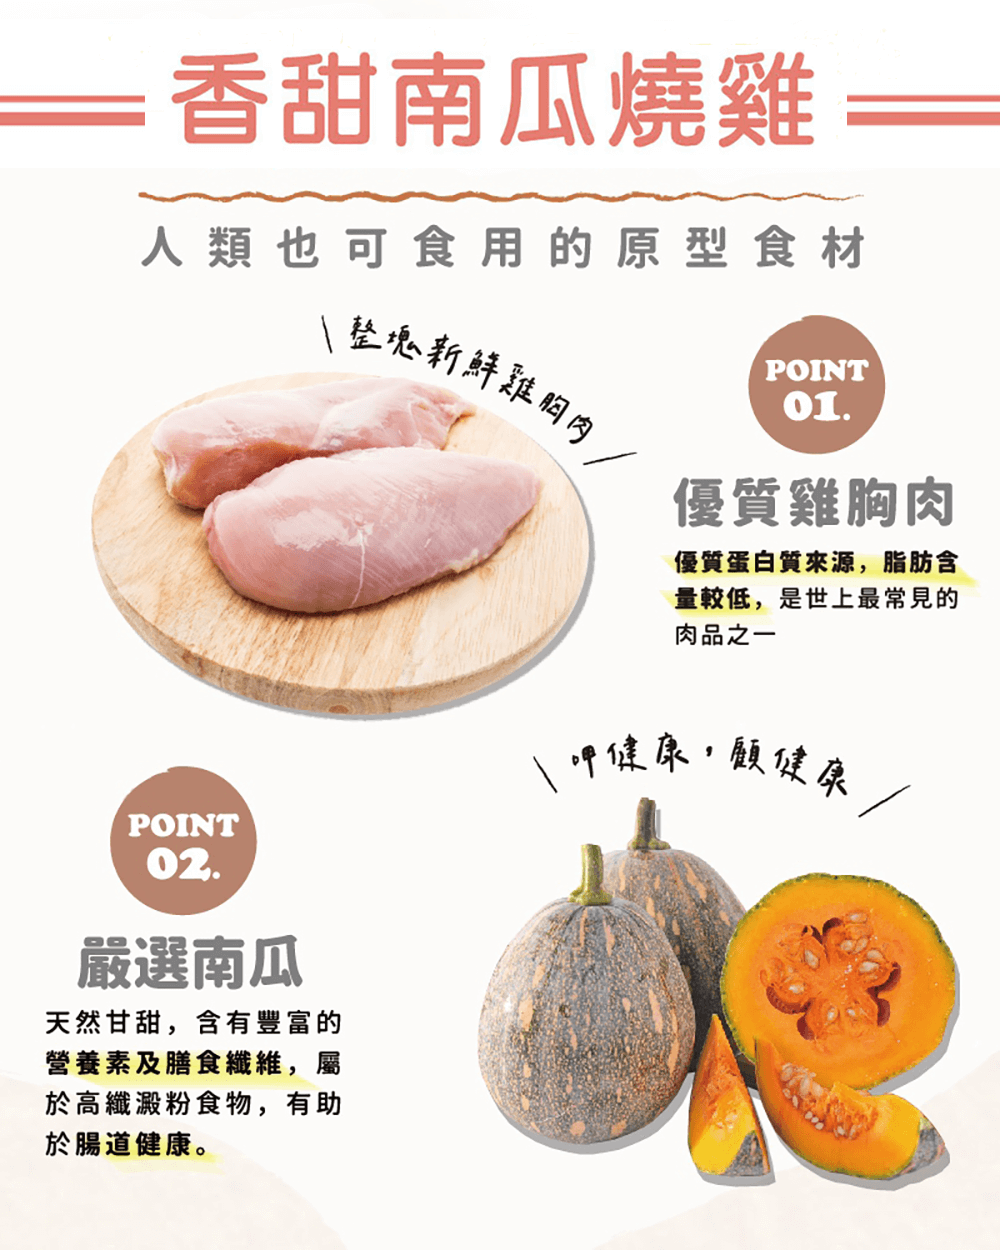 【飼糧倉】常溫鮮食 南瓜燒雞 60g | 豐富胡蘿蔔素